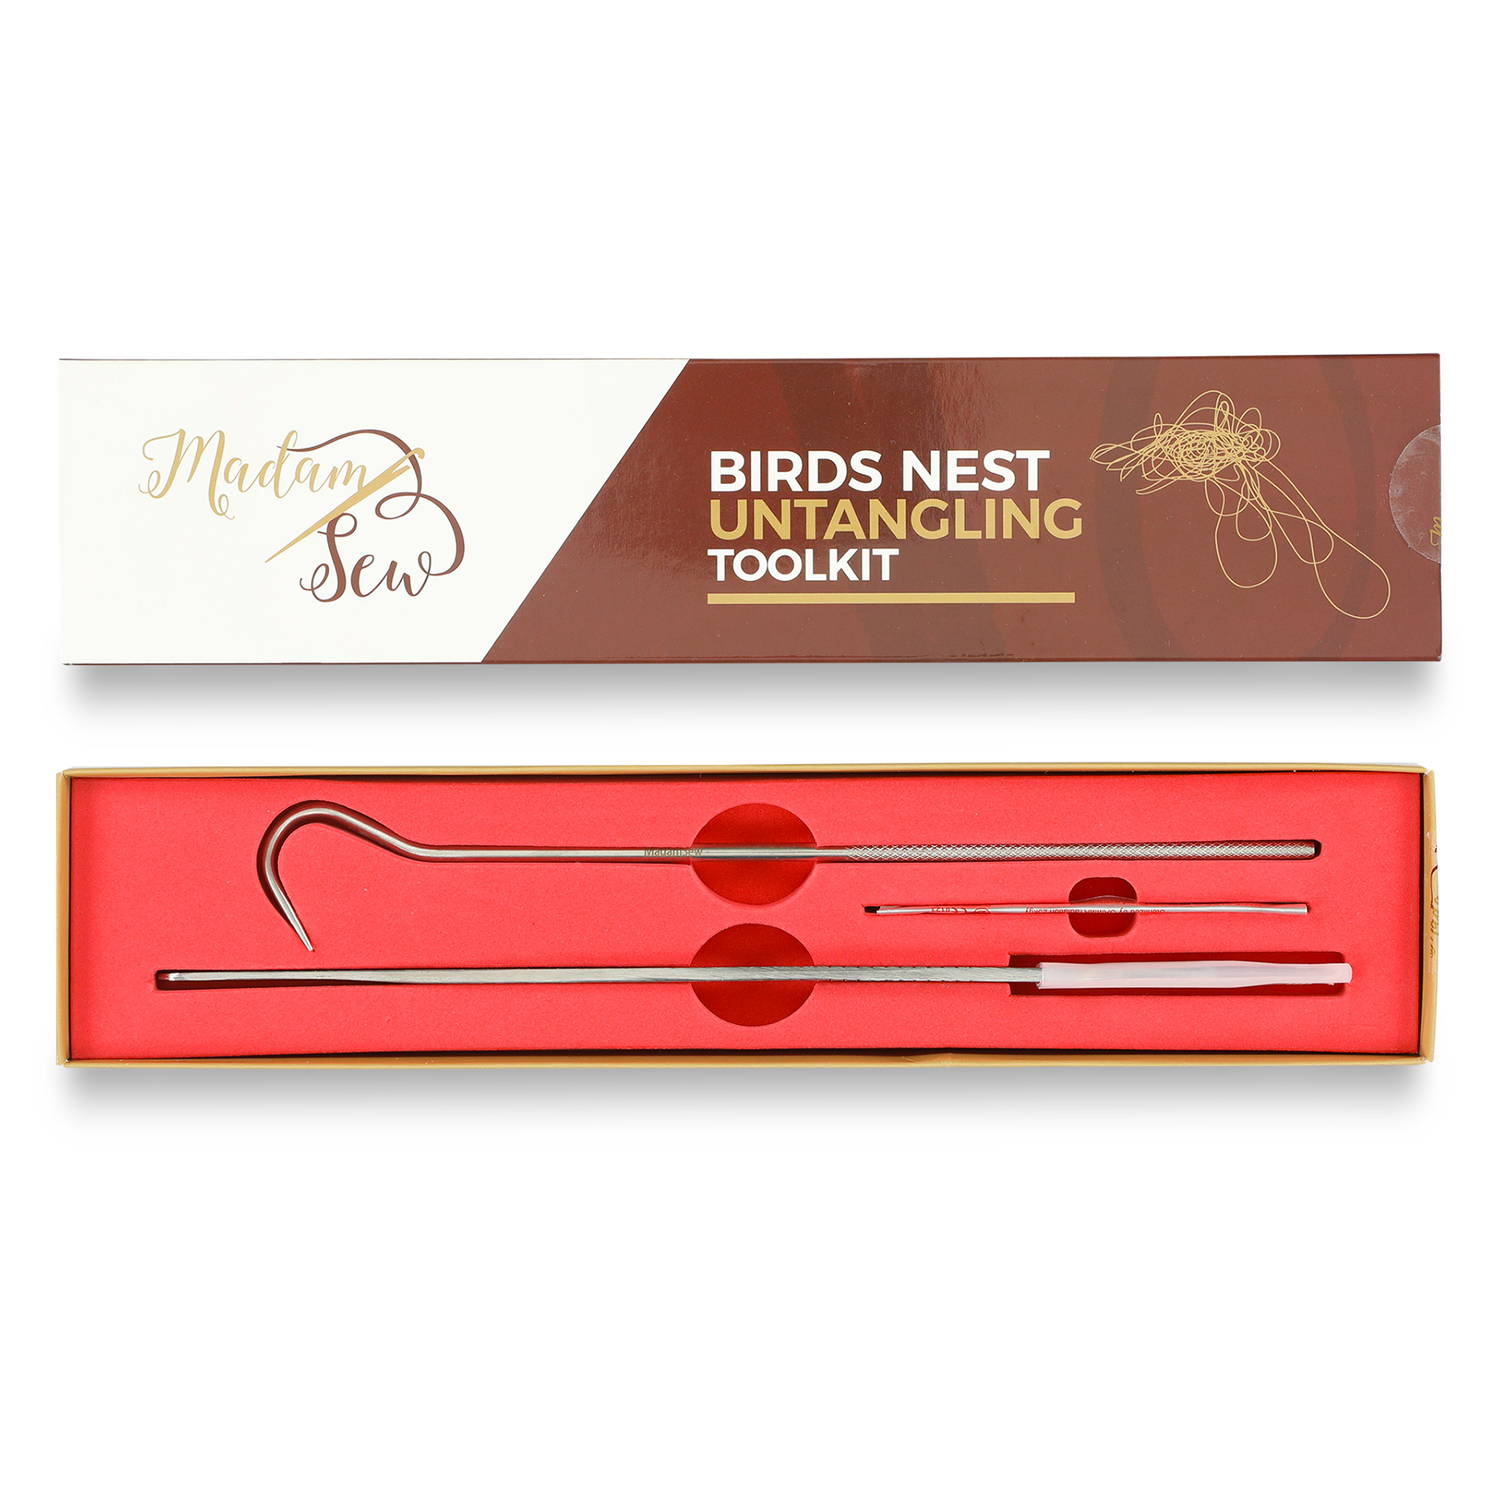 bird nest toolkit instructions